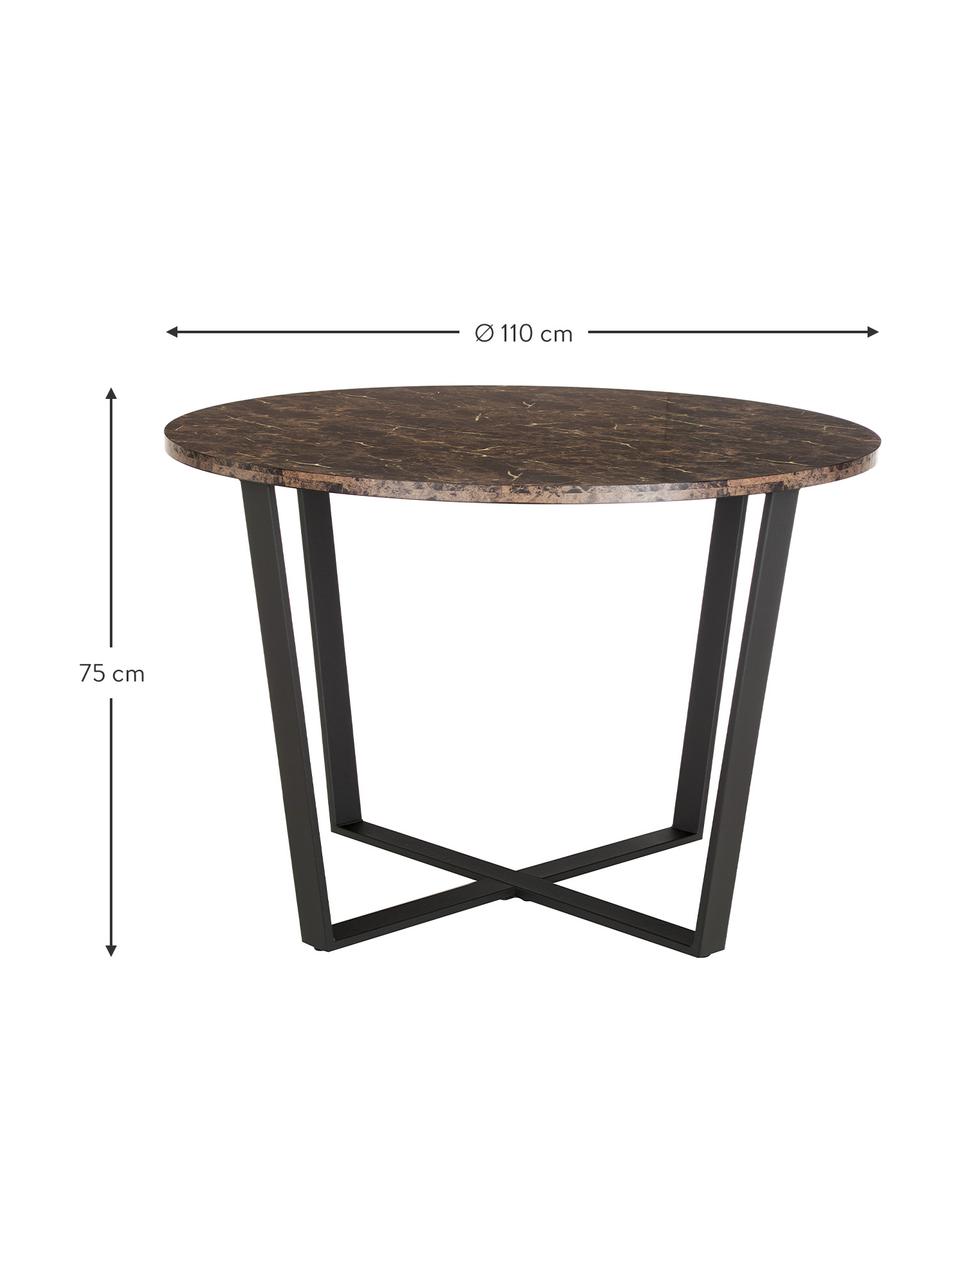 Okrúhly stôl s mramorovým vzhľadom Amble, Ø 110 cm, Hnedá, so vzhľadom mramoru, Ø 110 x V 75 cm